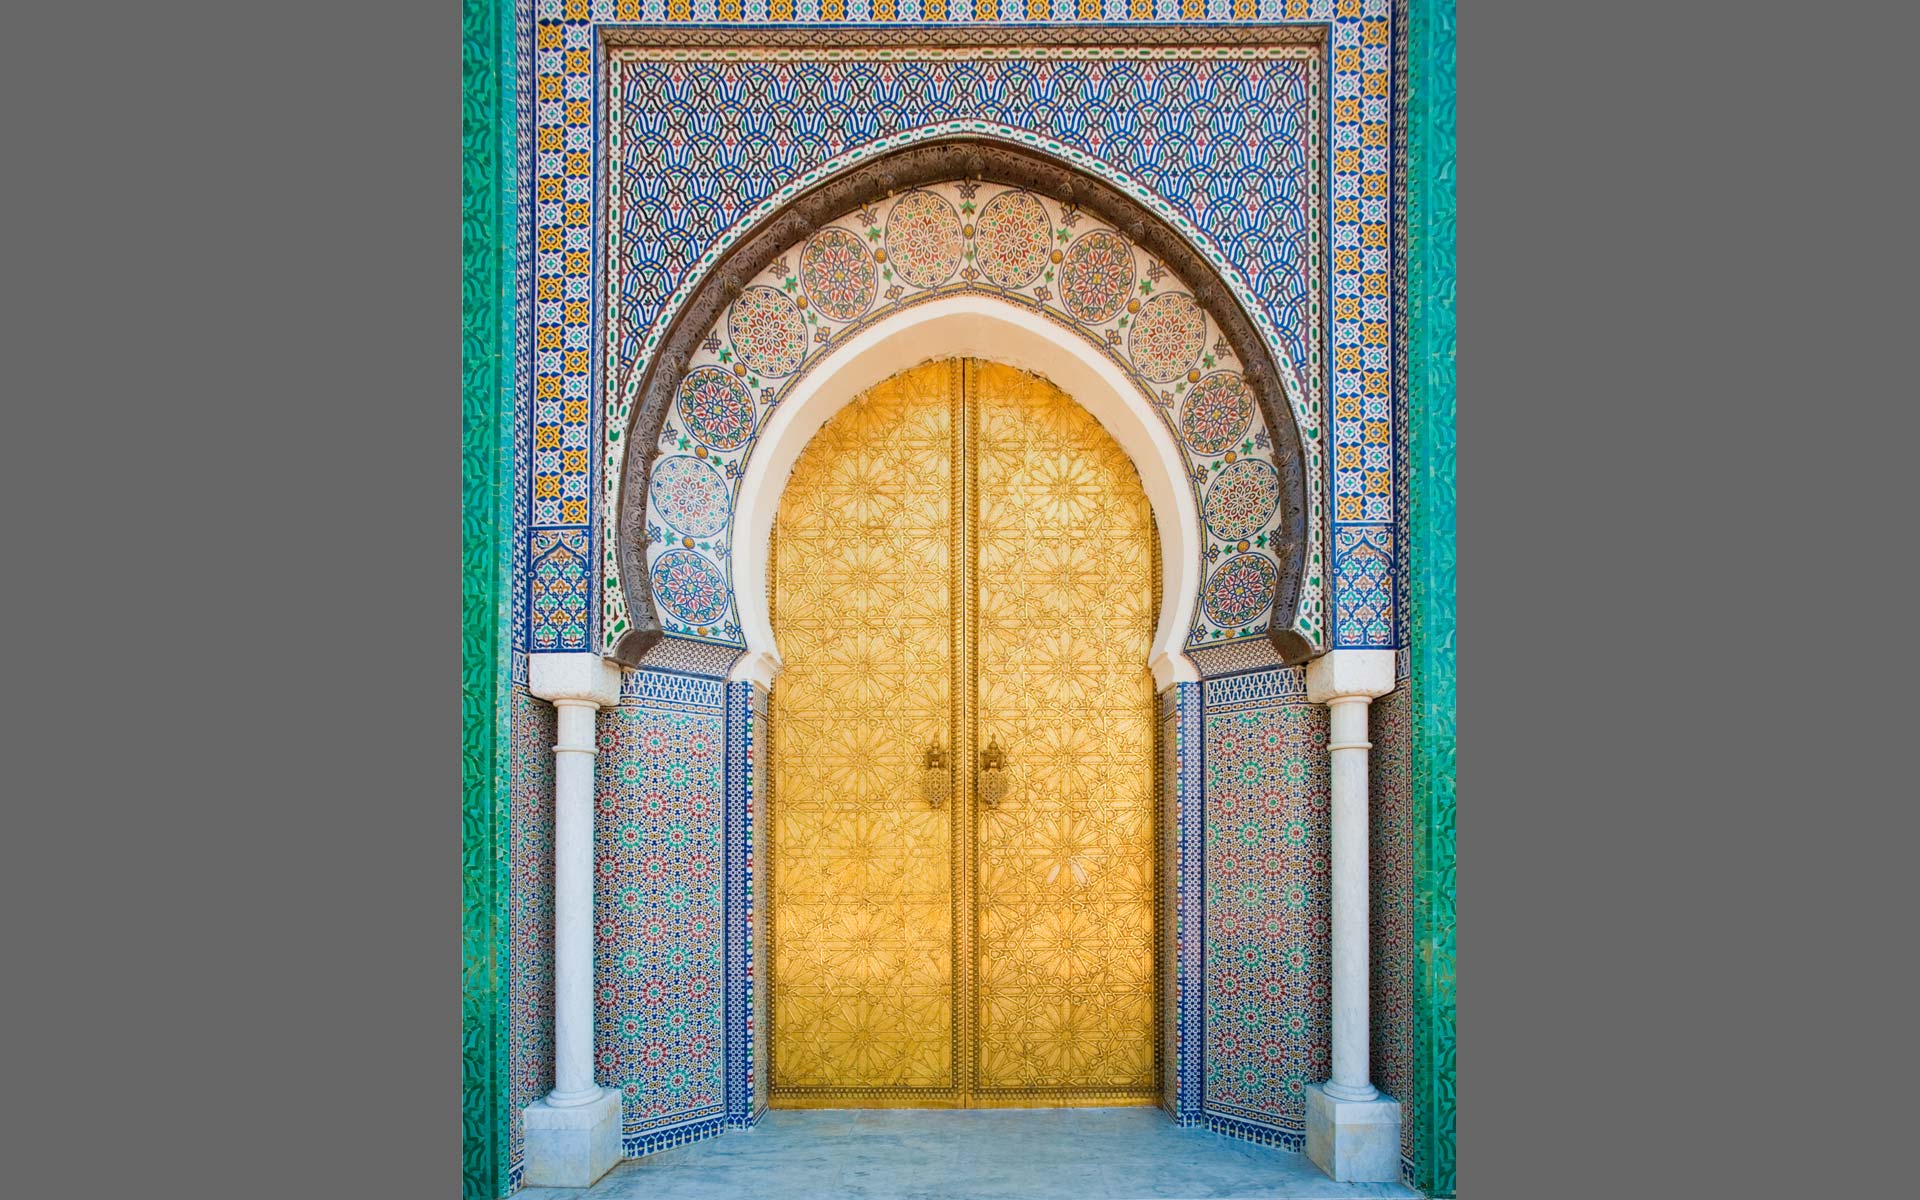 Fes, Morocco